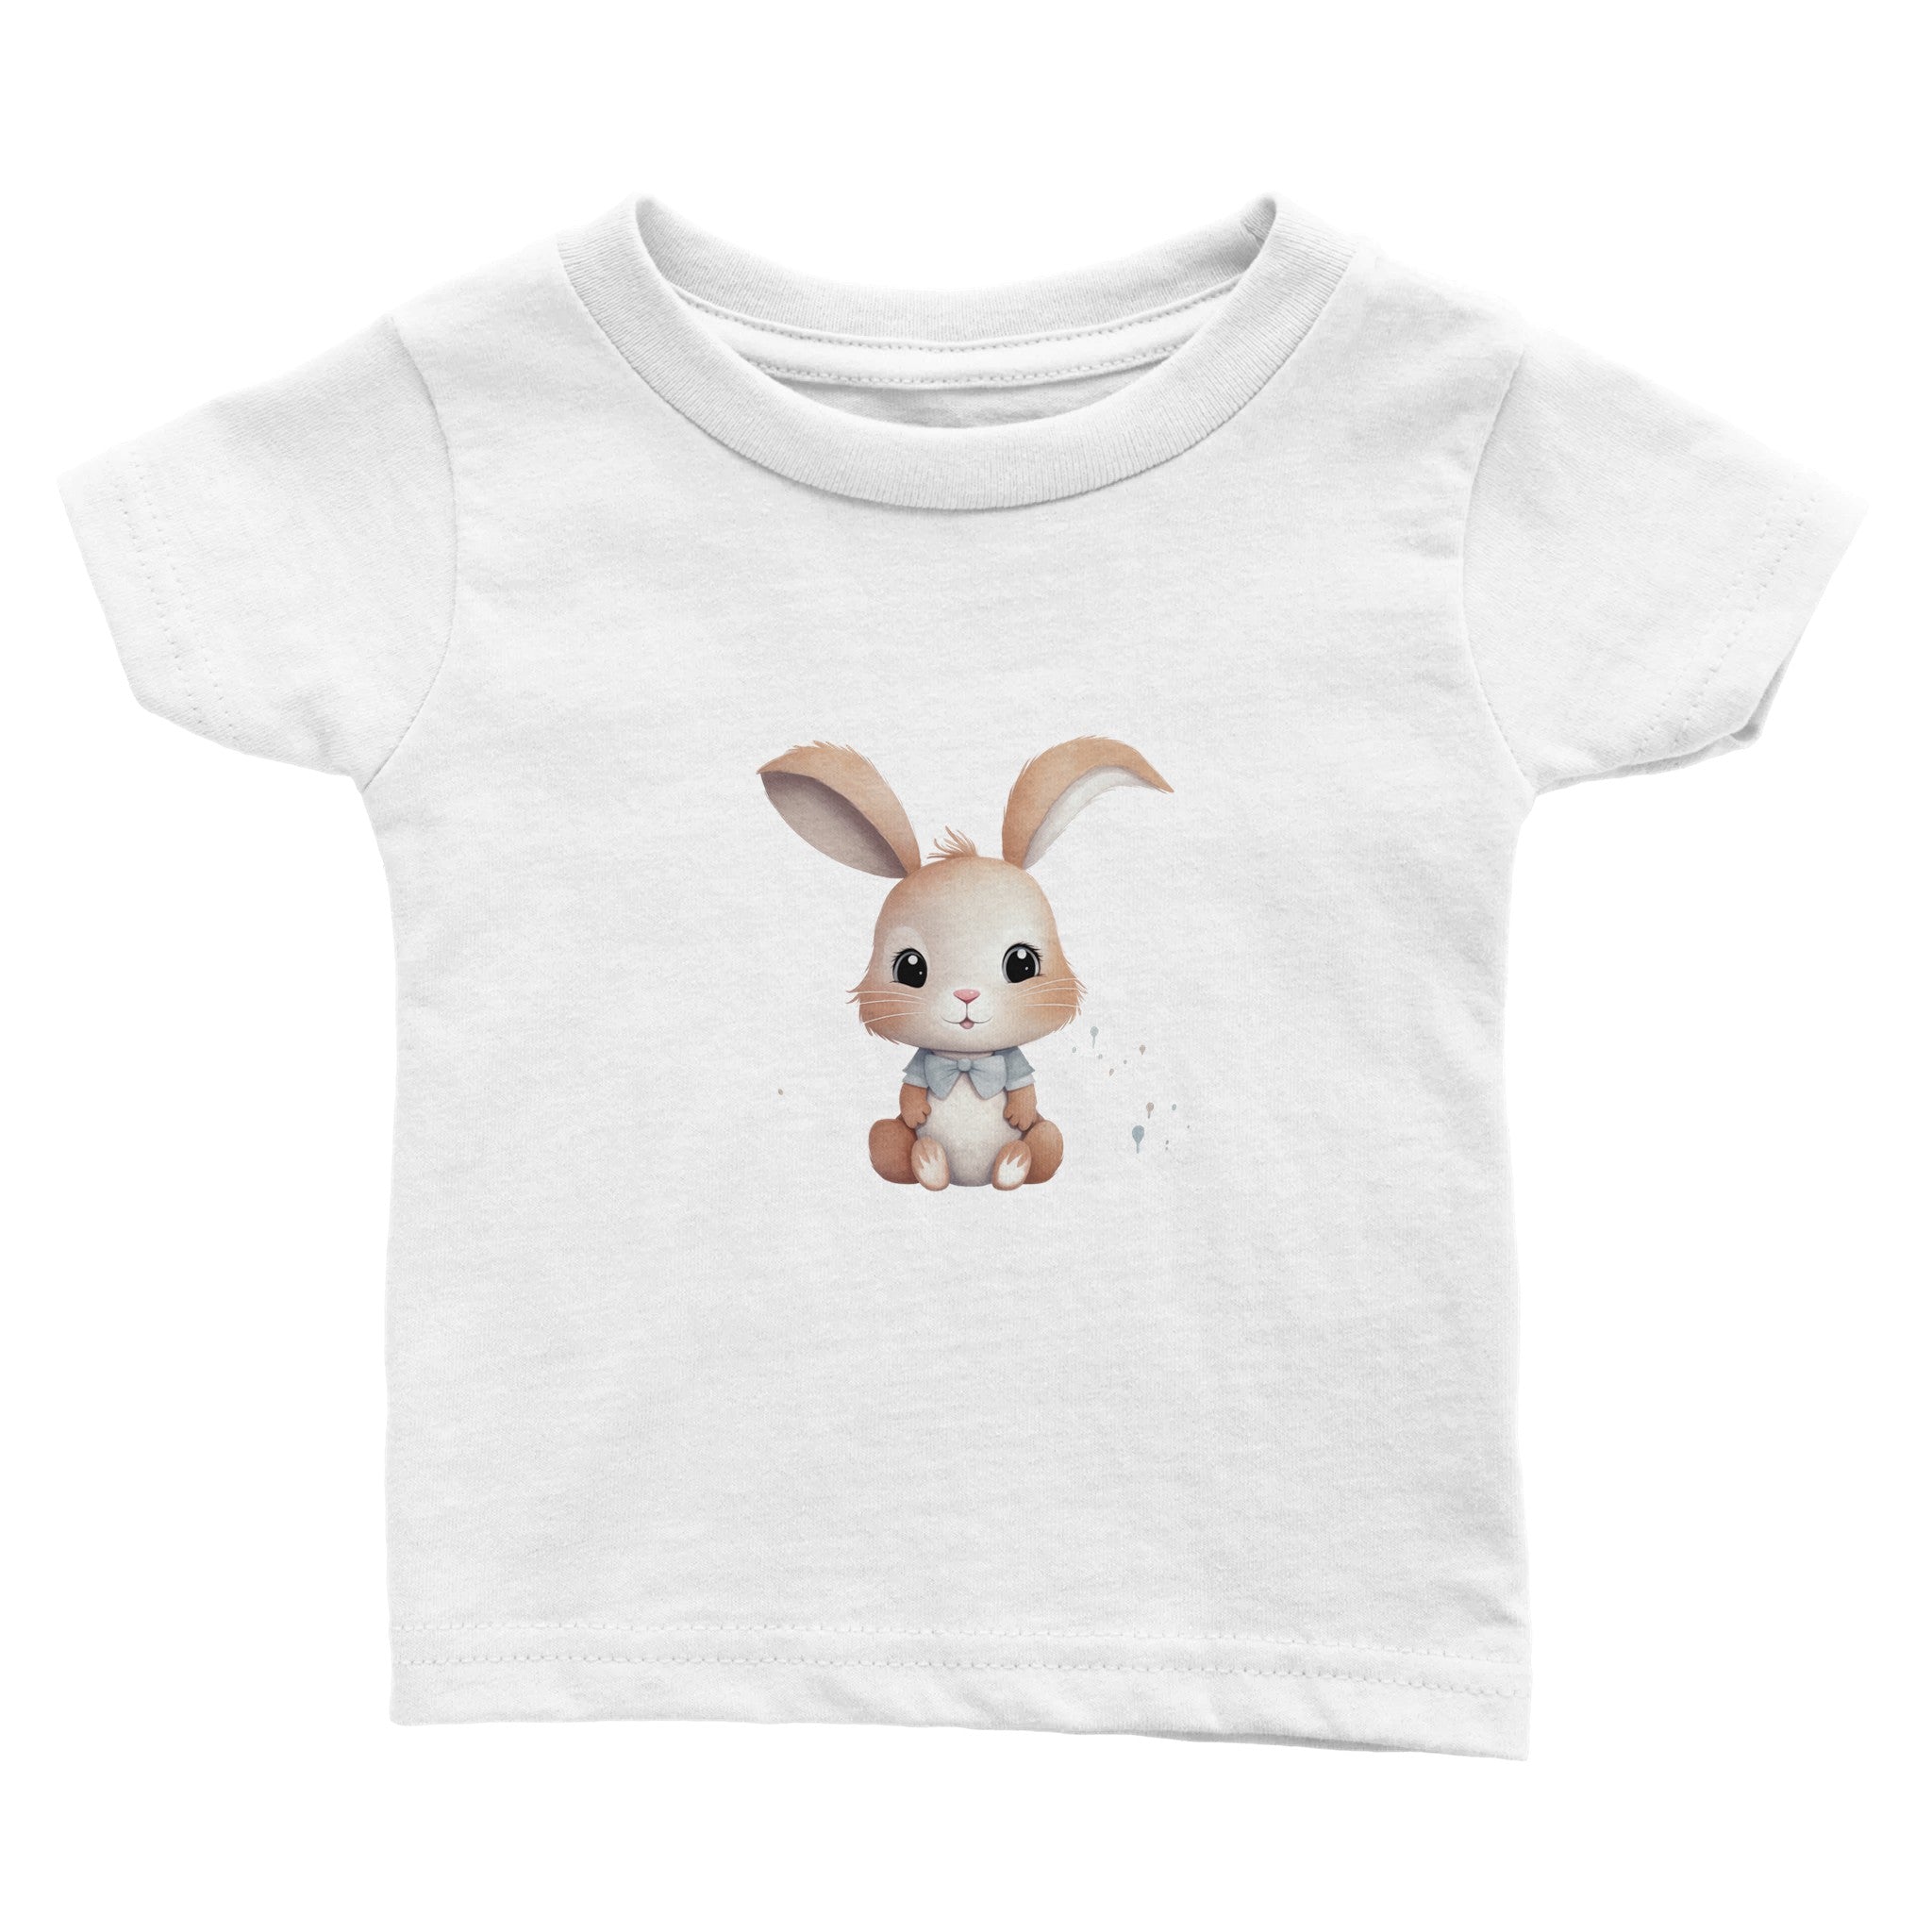 Charming Bowtie Bunny Baby Crewneck T-shirt - Optimalprint